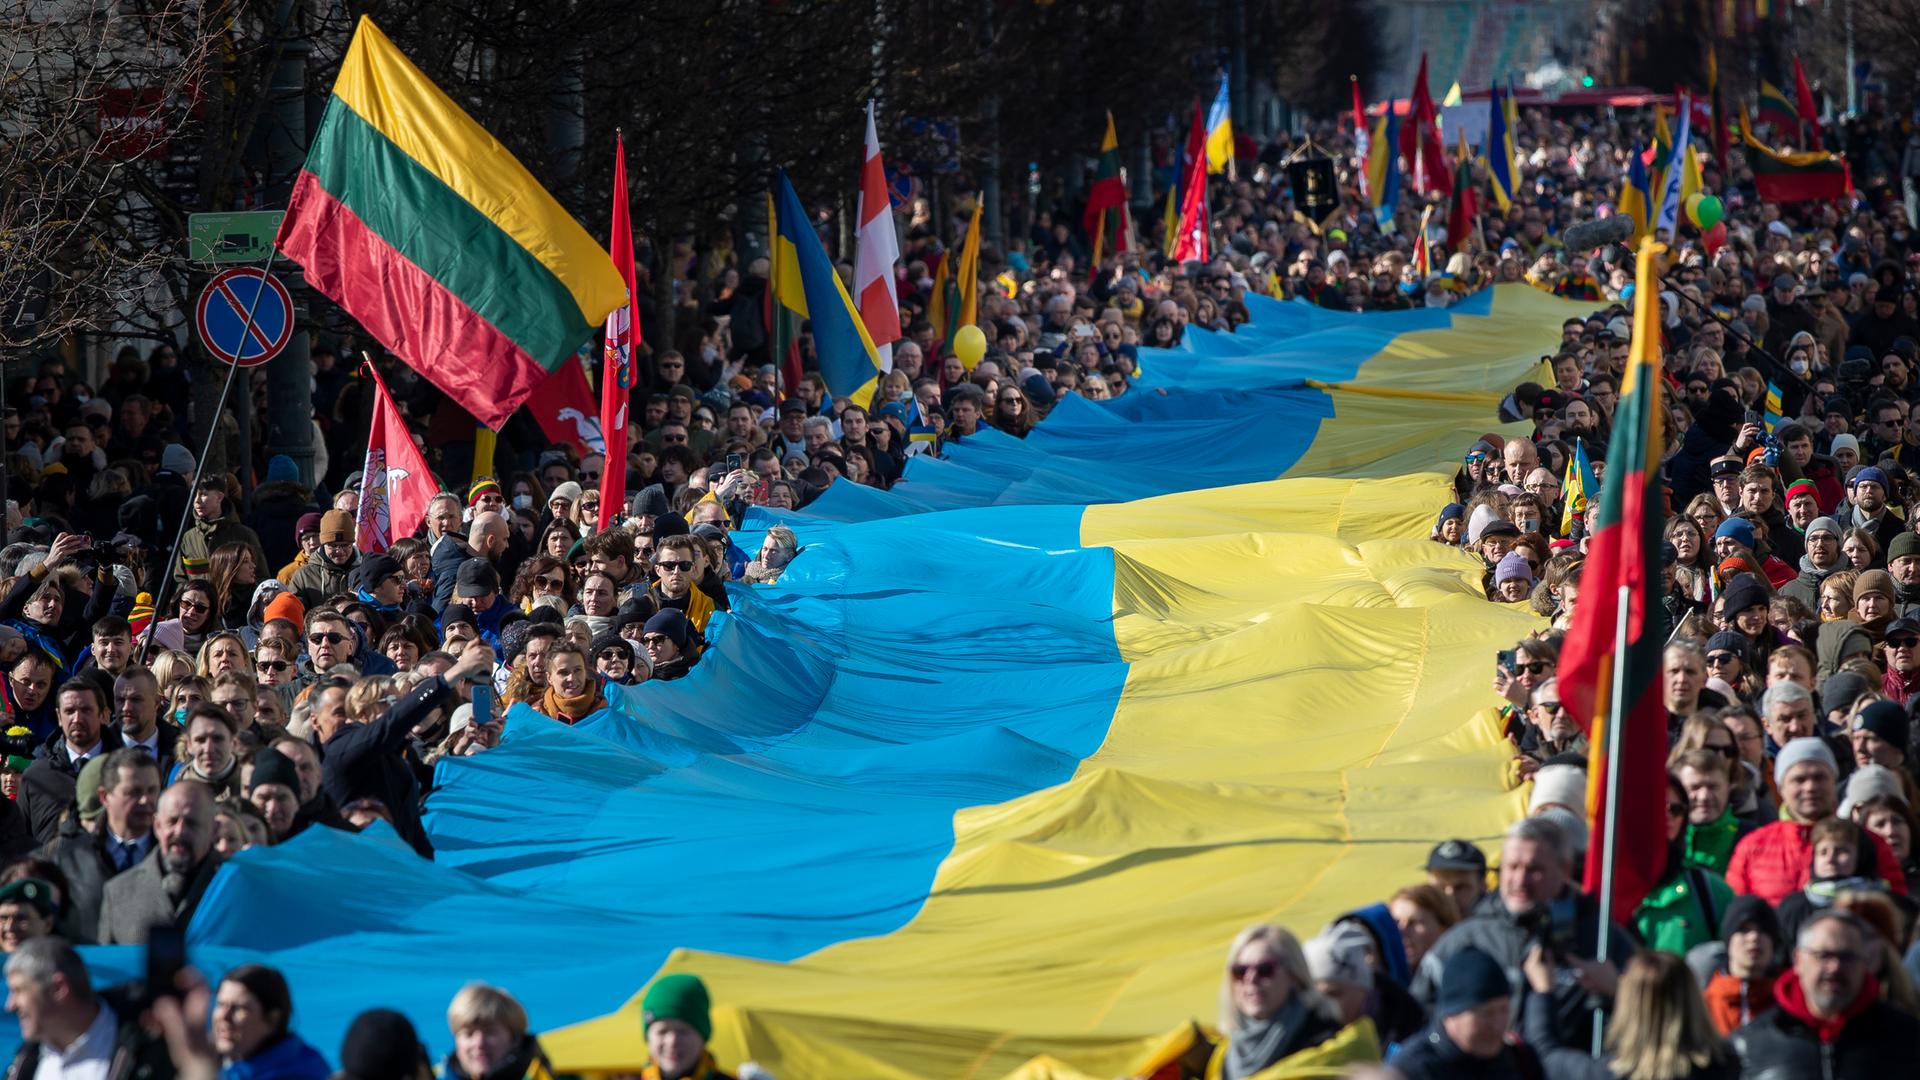 Menschen tragen am 11.03.2022 eine riesige Ukrainische Flagge bei den Feierlichkeiten zu Litauens 1991 erlangter Unabhängigkeit in der Hauptstadt Vilnius